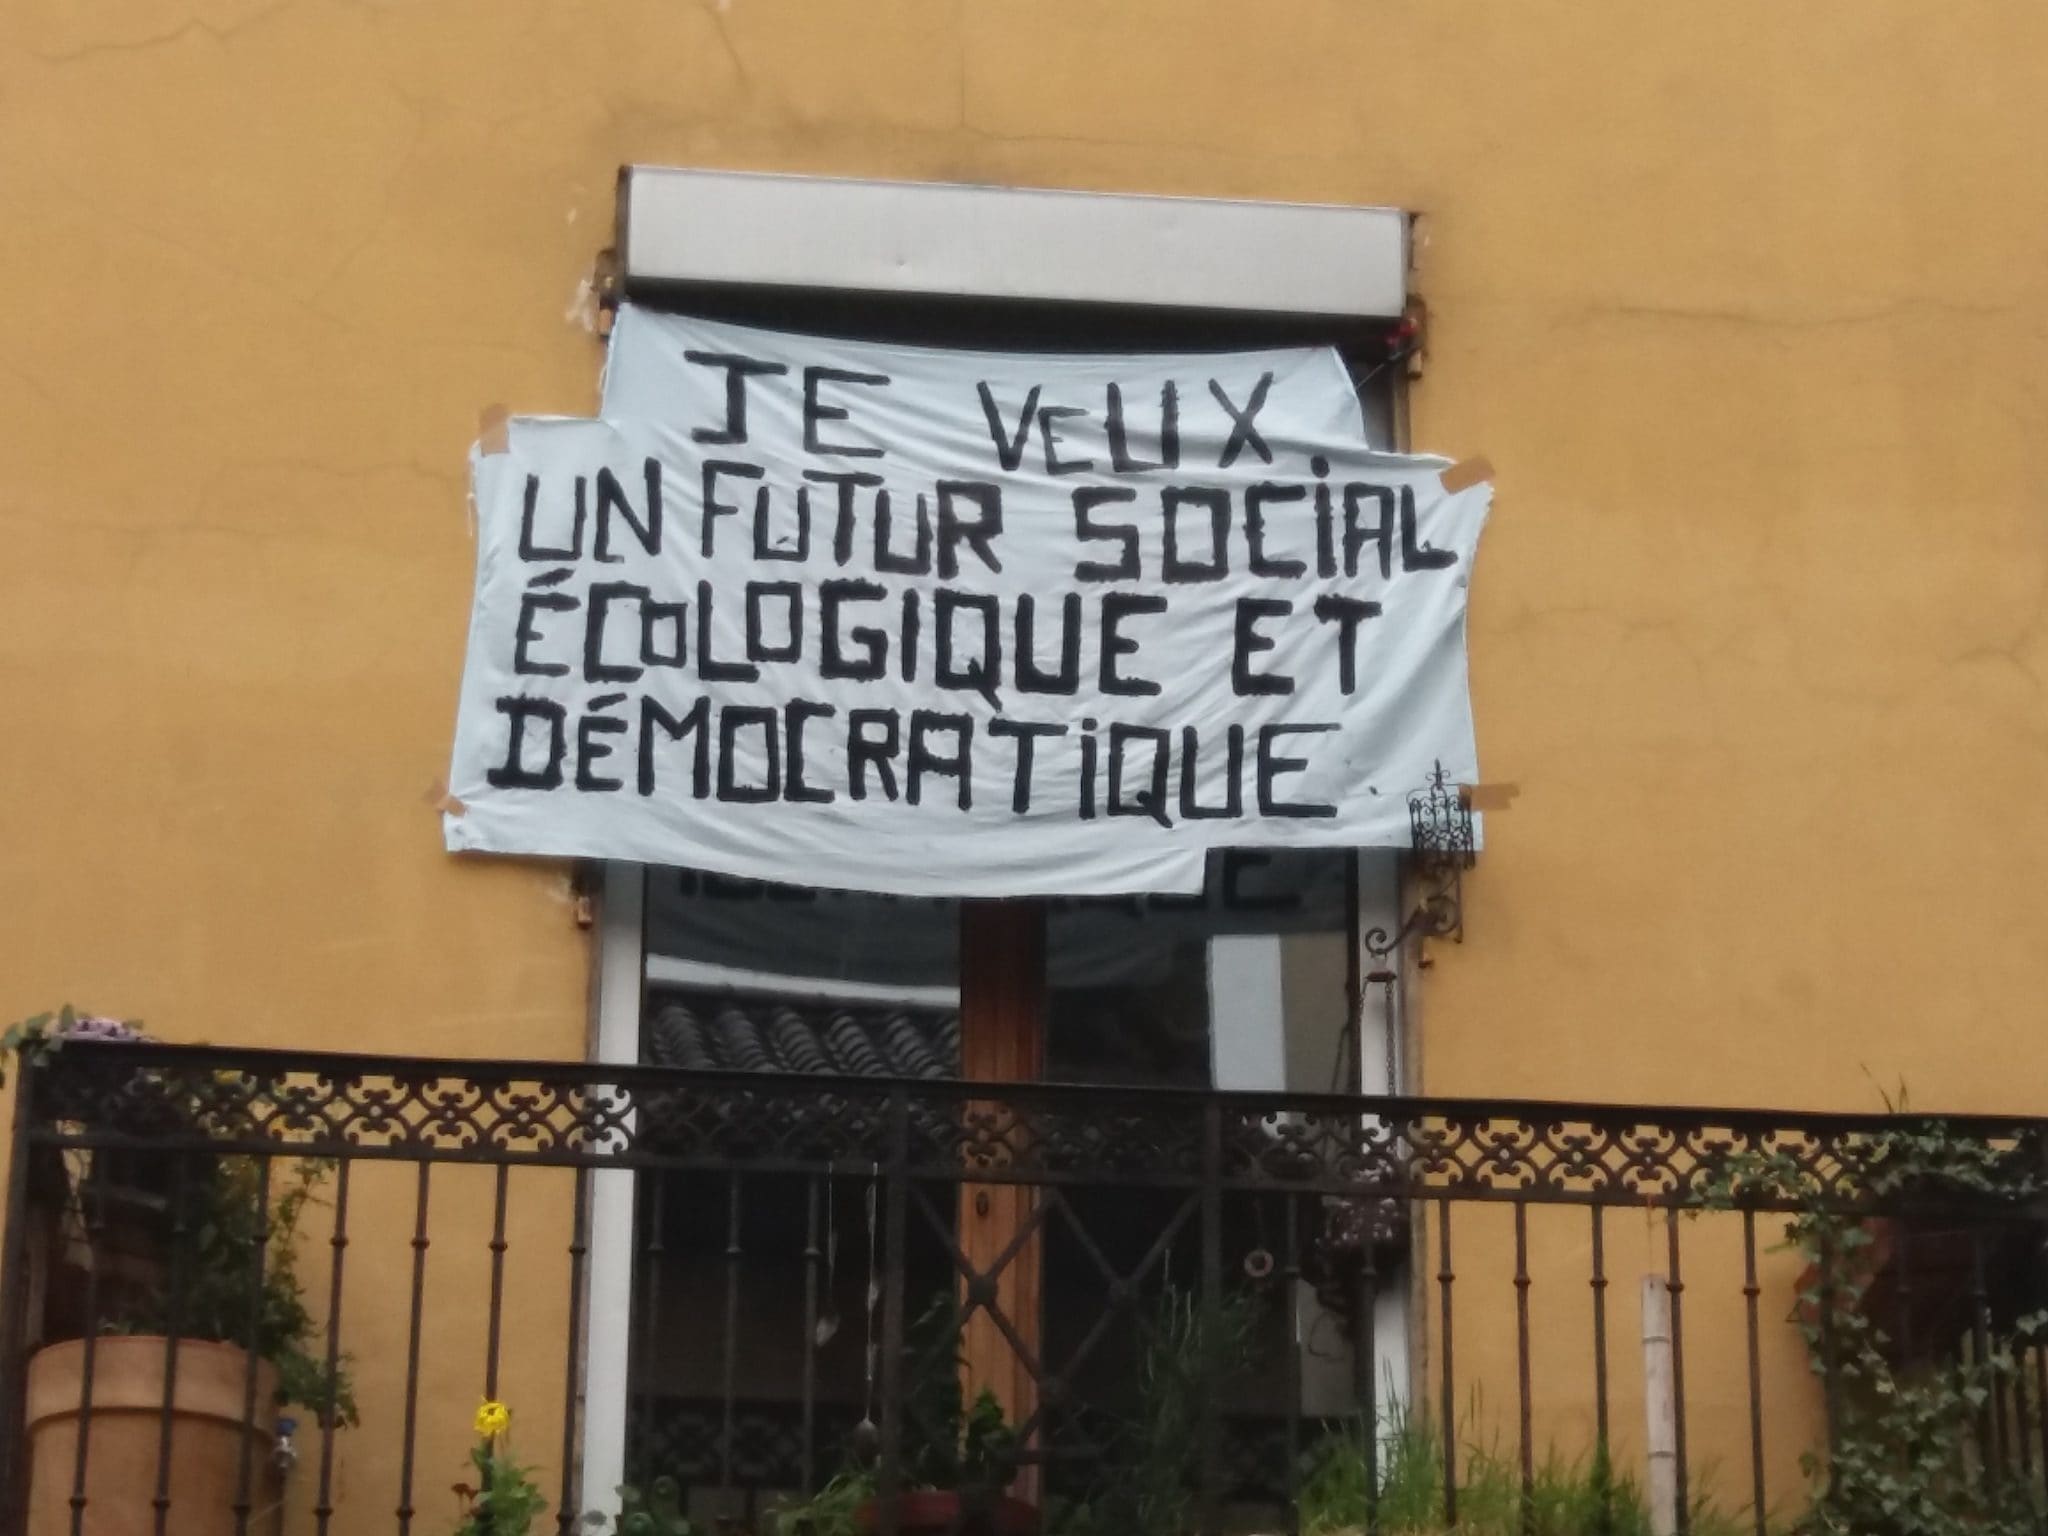 "Je veux un futur social, écologique et démocratique"